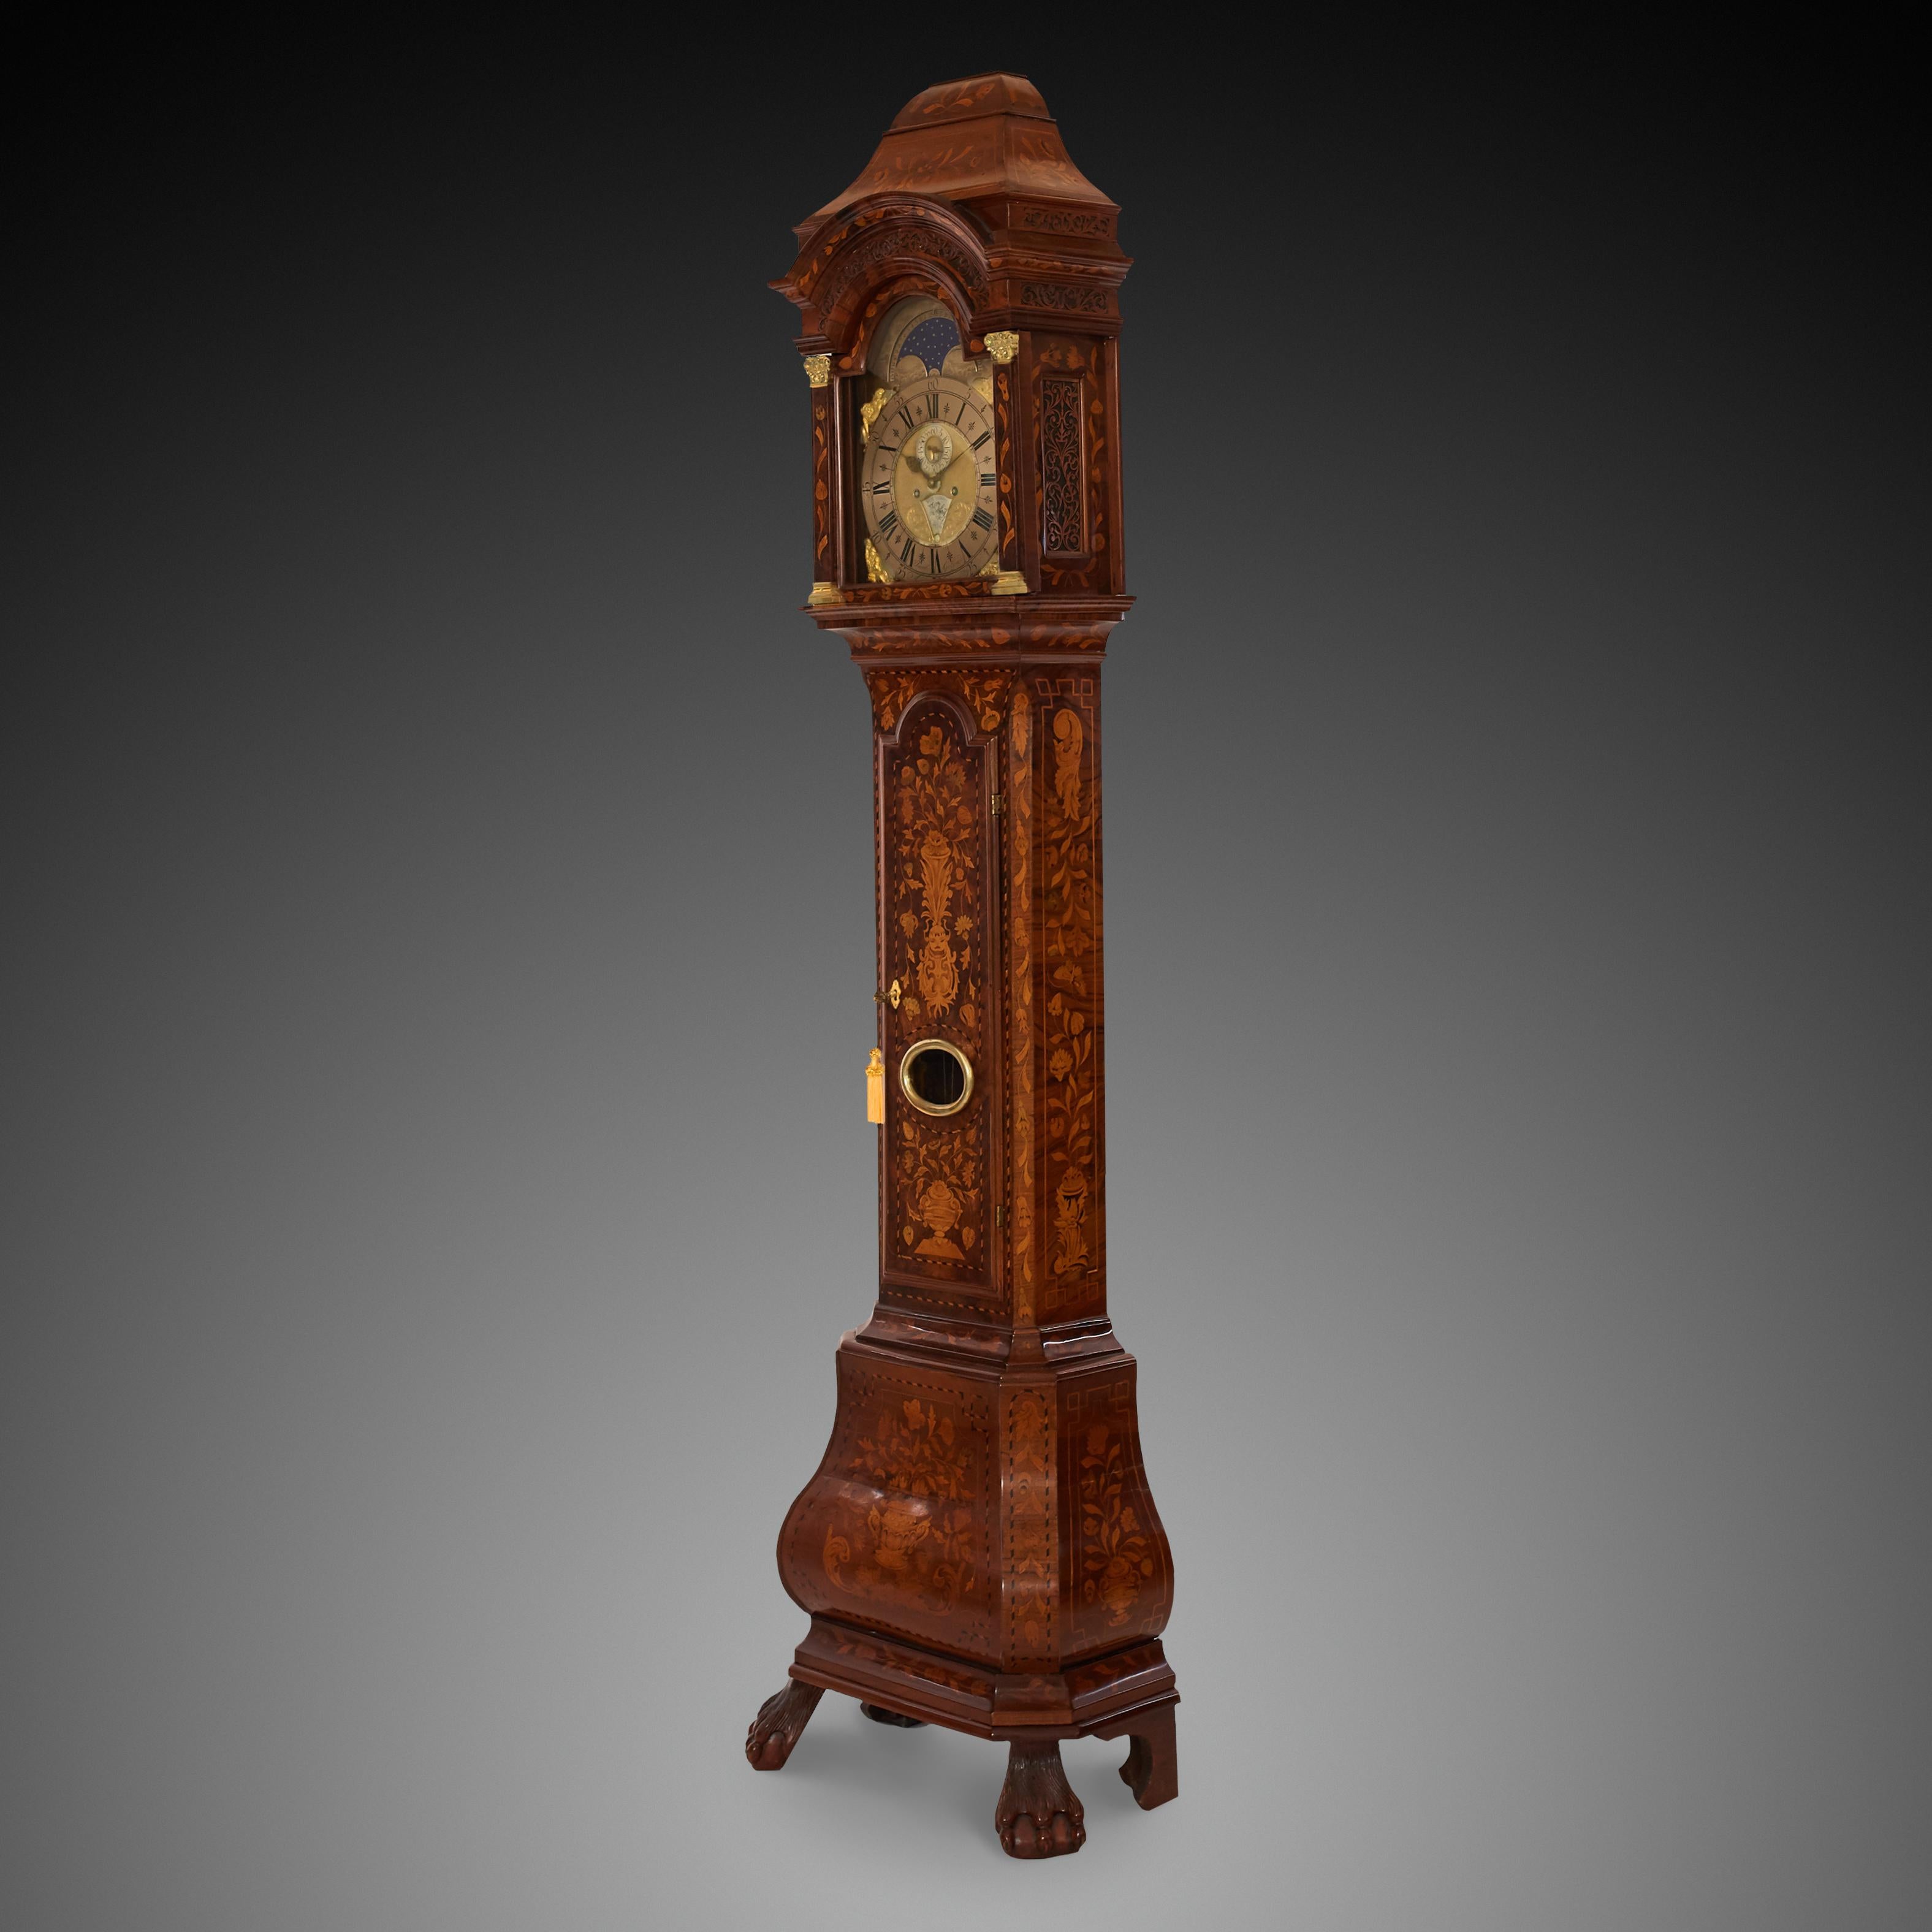 Uhr aus dem 18. Jahrhundert in Nussbaumfarbe und holländischem Stil. Eine Uhr mit einem Sockel auf den Beinen mit floralen, botanischen Ornamenten verziert. Ein Schild mit den Phasen des Mondes in Form eines Bogens
Es gibt Funktionen wie Sekunden,